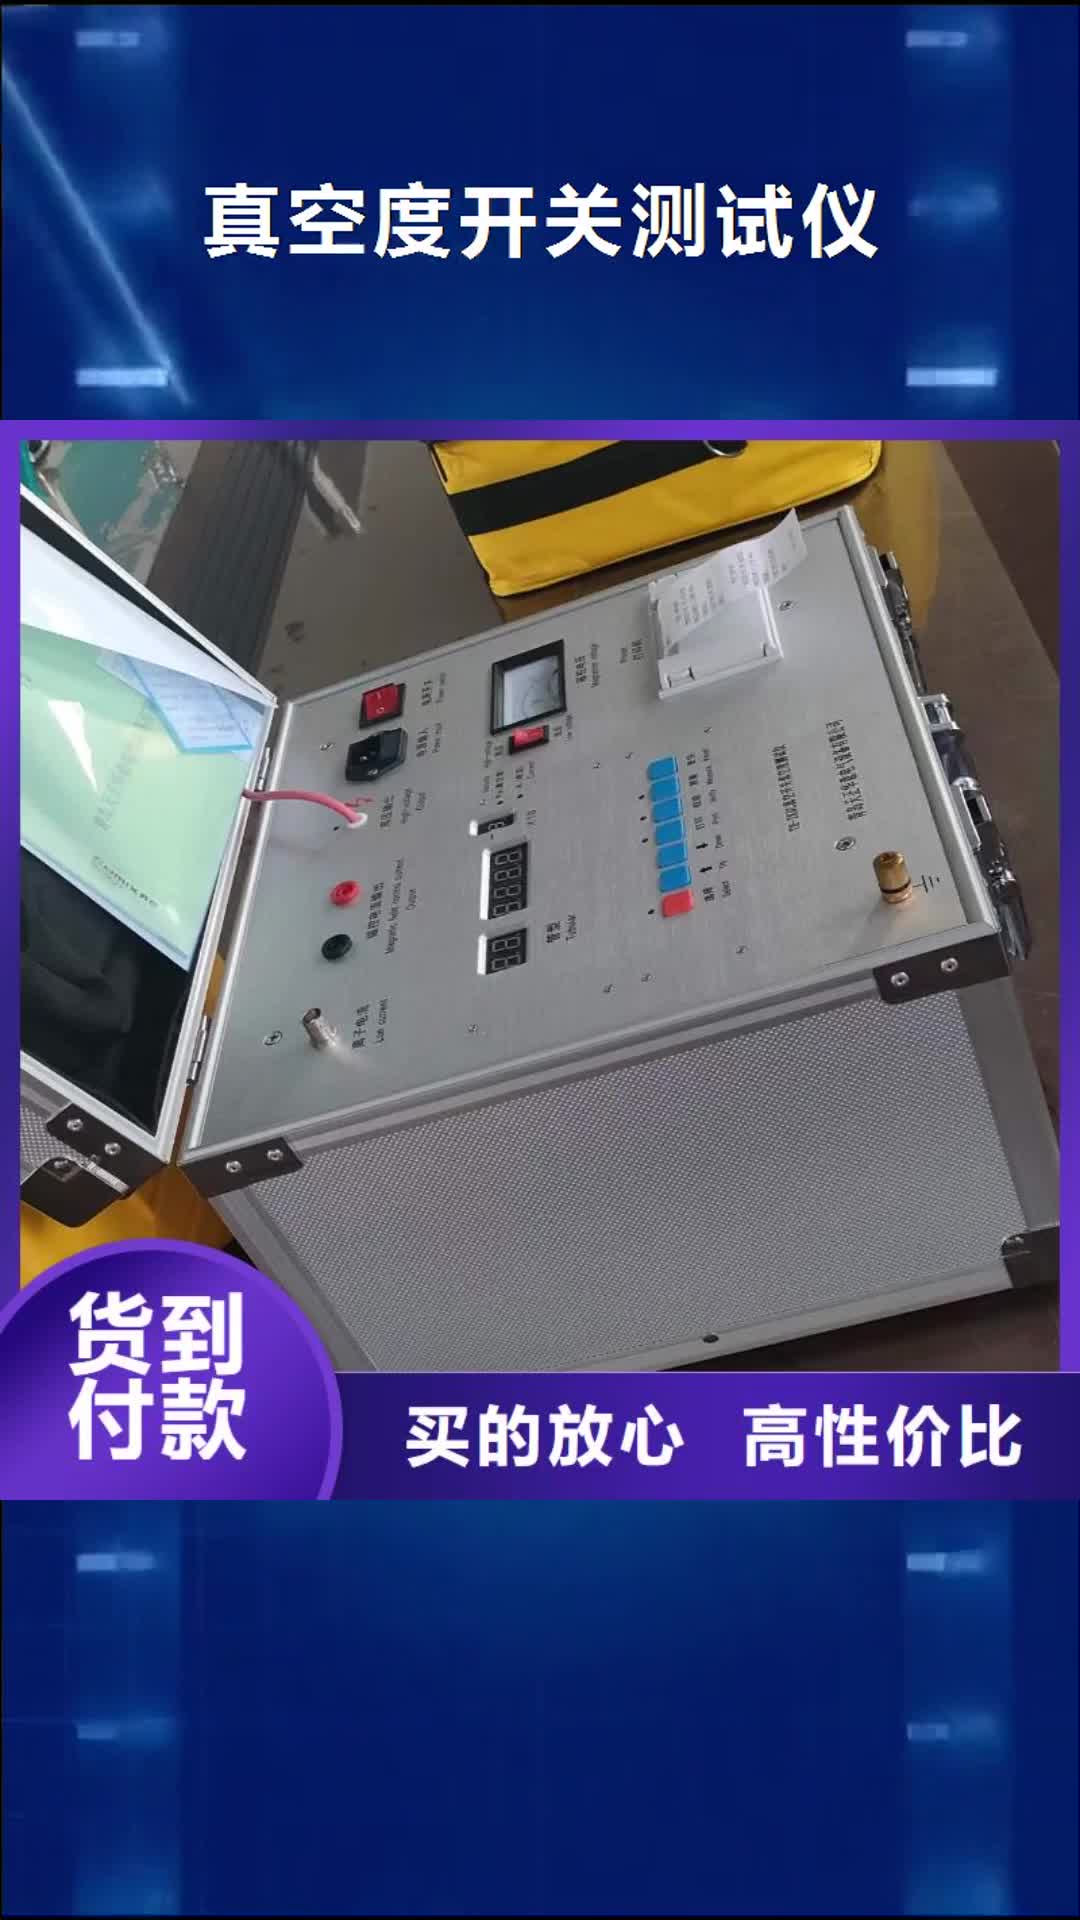 芜湖【真空度开关测试仪】,微机继电保护测试仪实体厂家